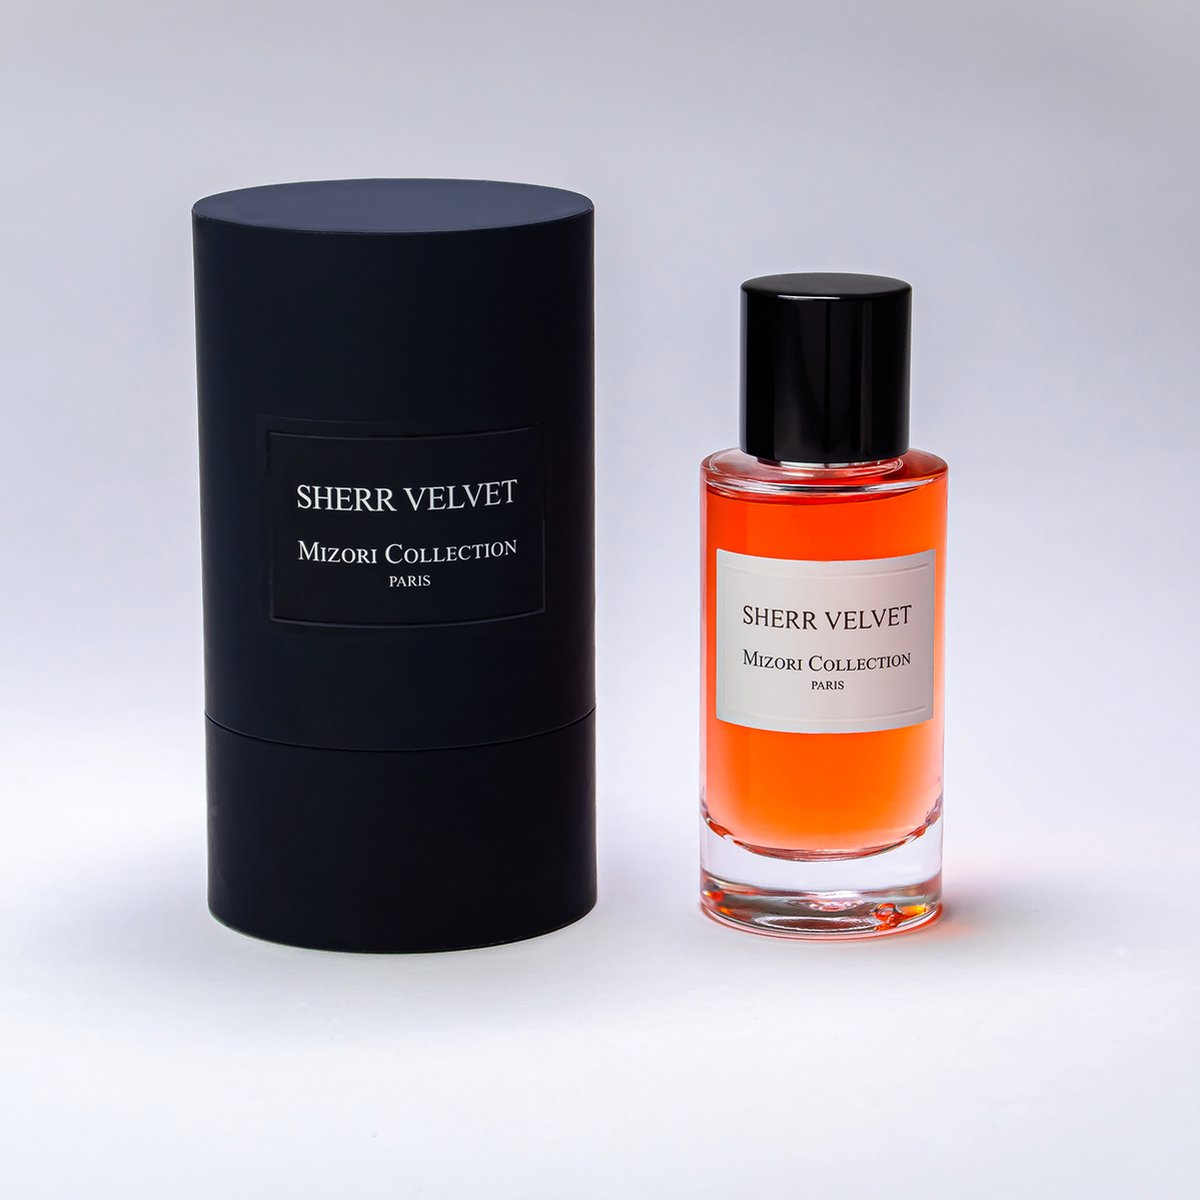 Sherr Velvet - Mizori Collection Paris - High Exclusive Perfume - Eau de Parfum - 50 ml - Niche Perfume